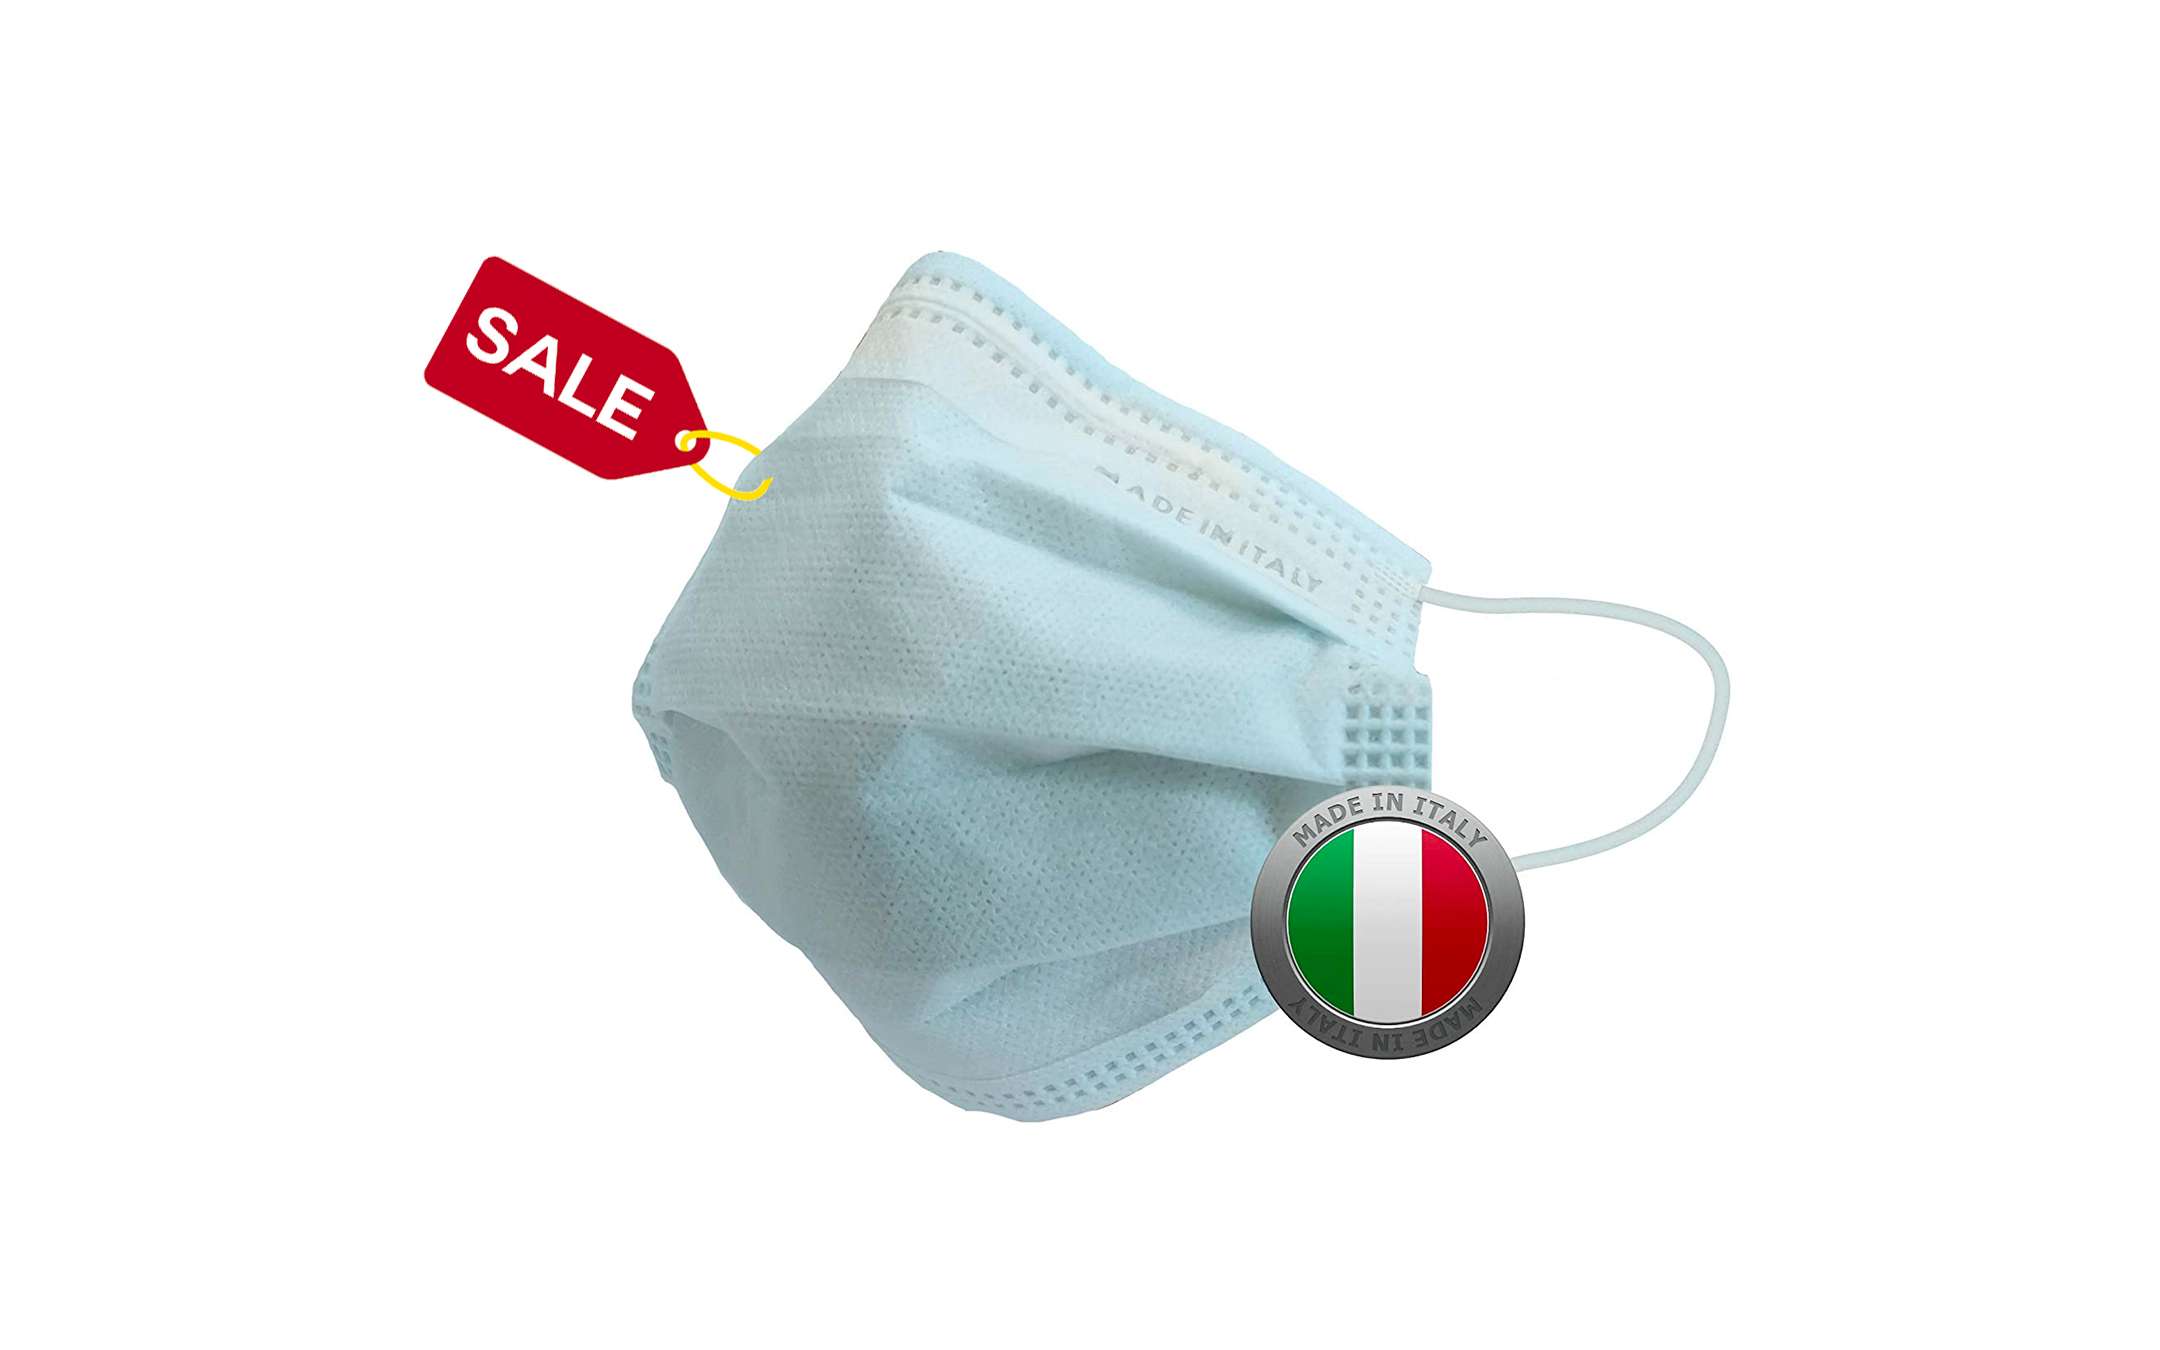 Mascherine Chirurgiche MADE IN ITALY in offerta con consegna rapida